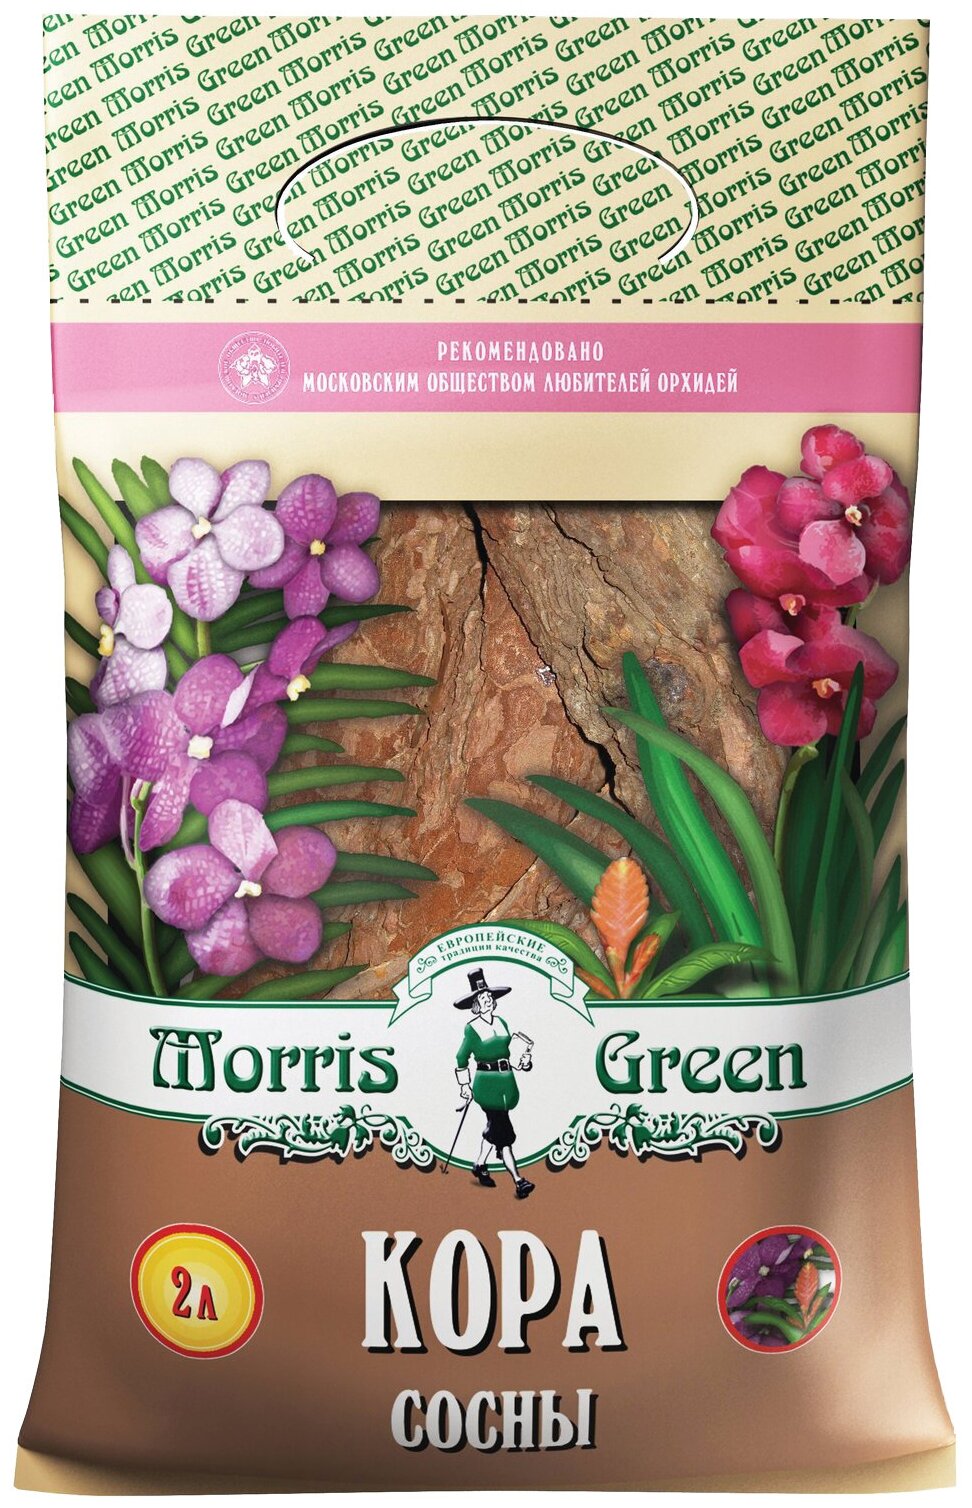   Morris Green 2 .